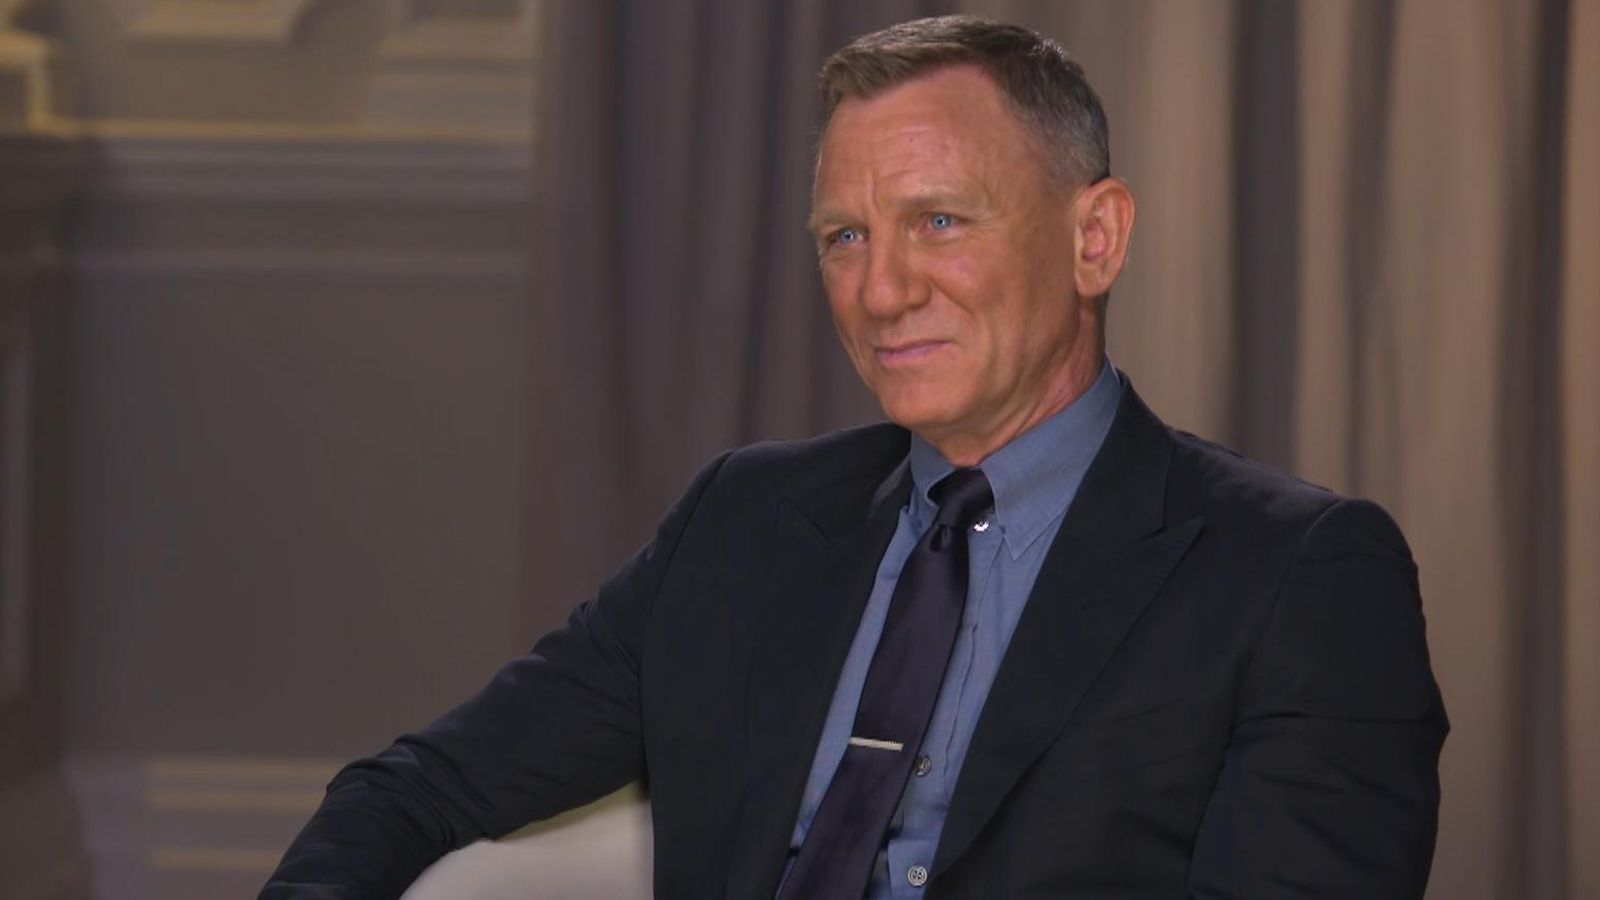 Daniel Craig: 'I've never regretted being James Bond' | News UK Video ...